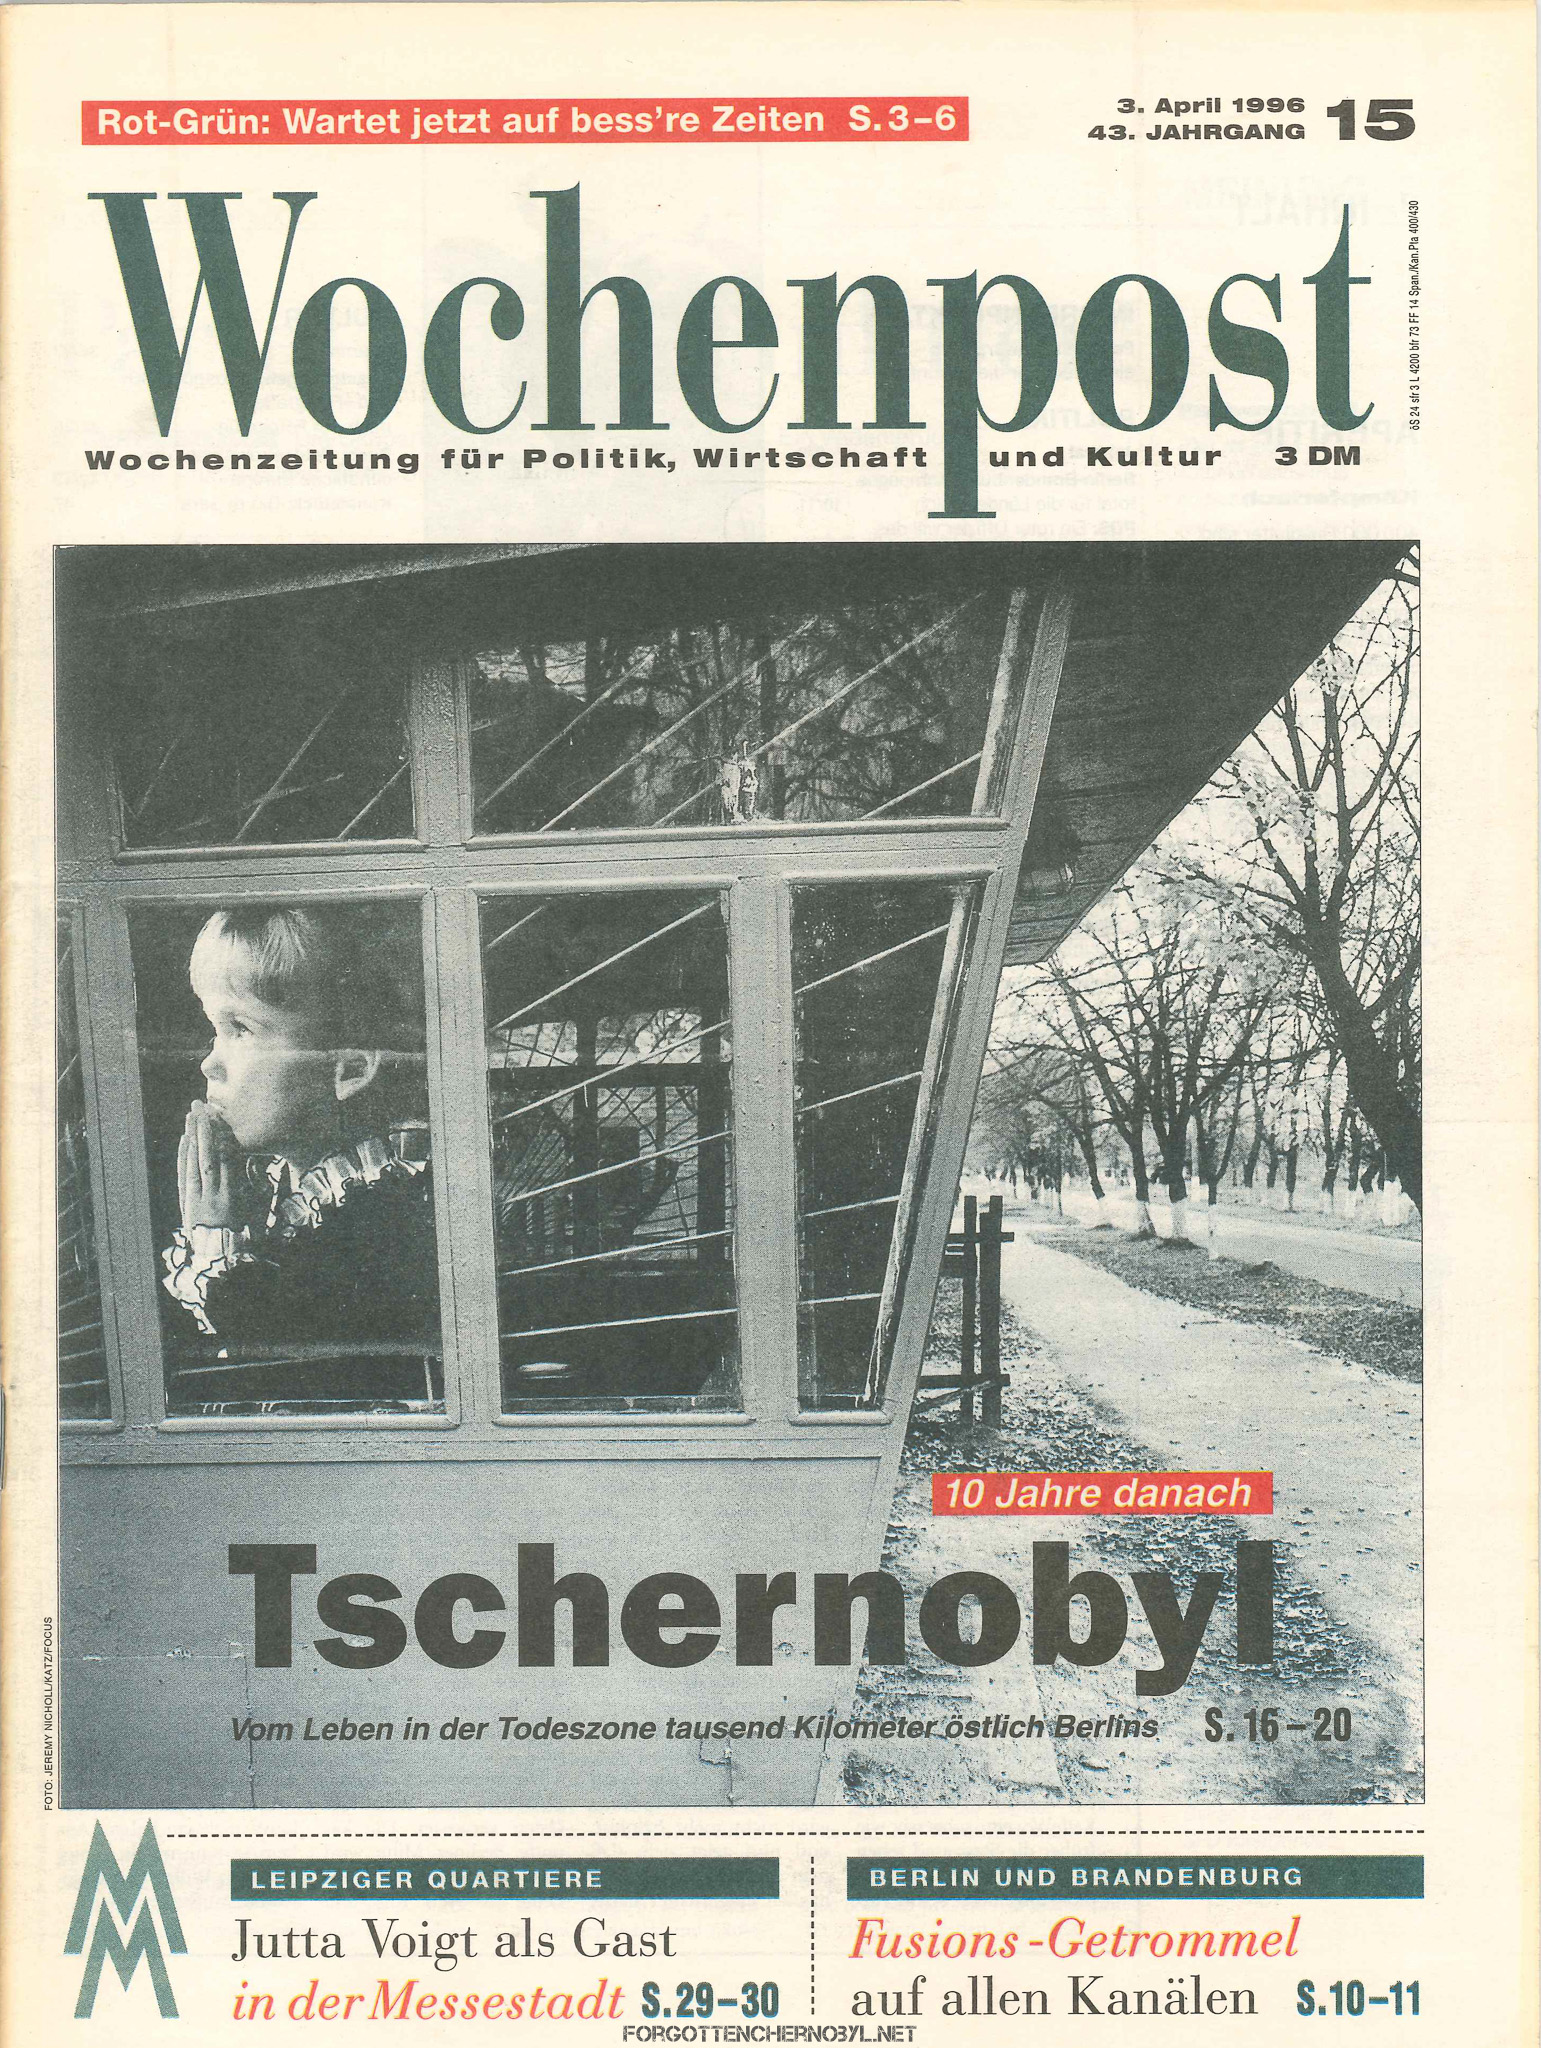 10 Jahre danach Tschernobyl - Wochenpost 3 April 1996